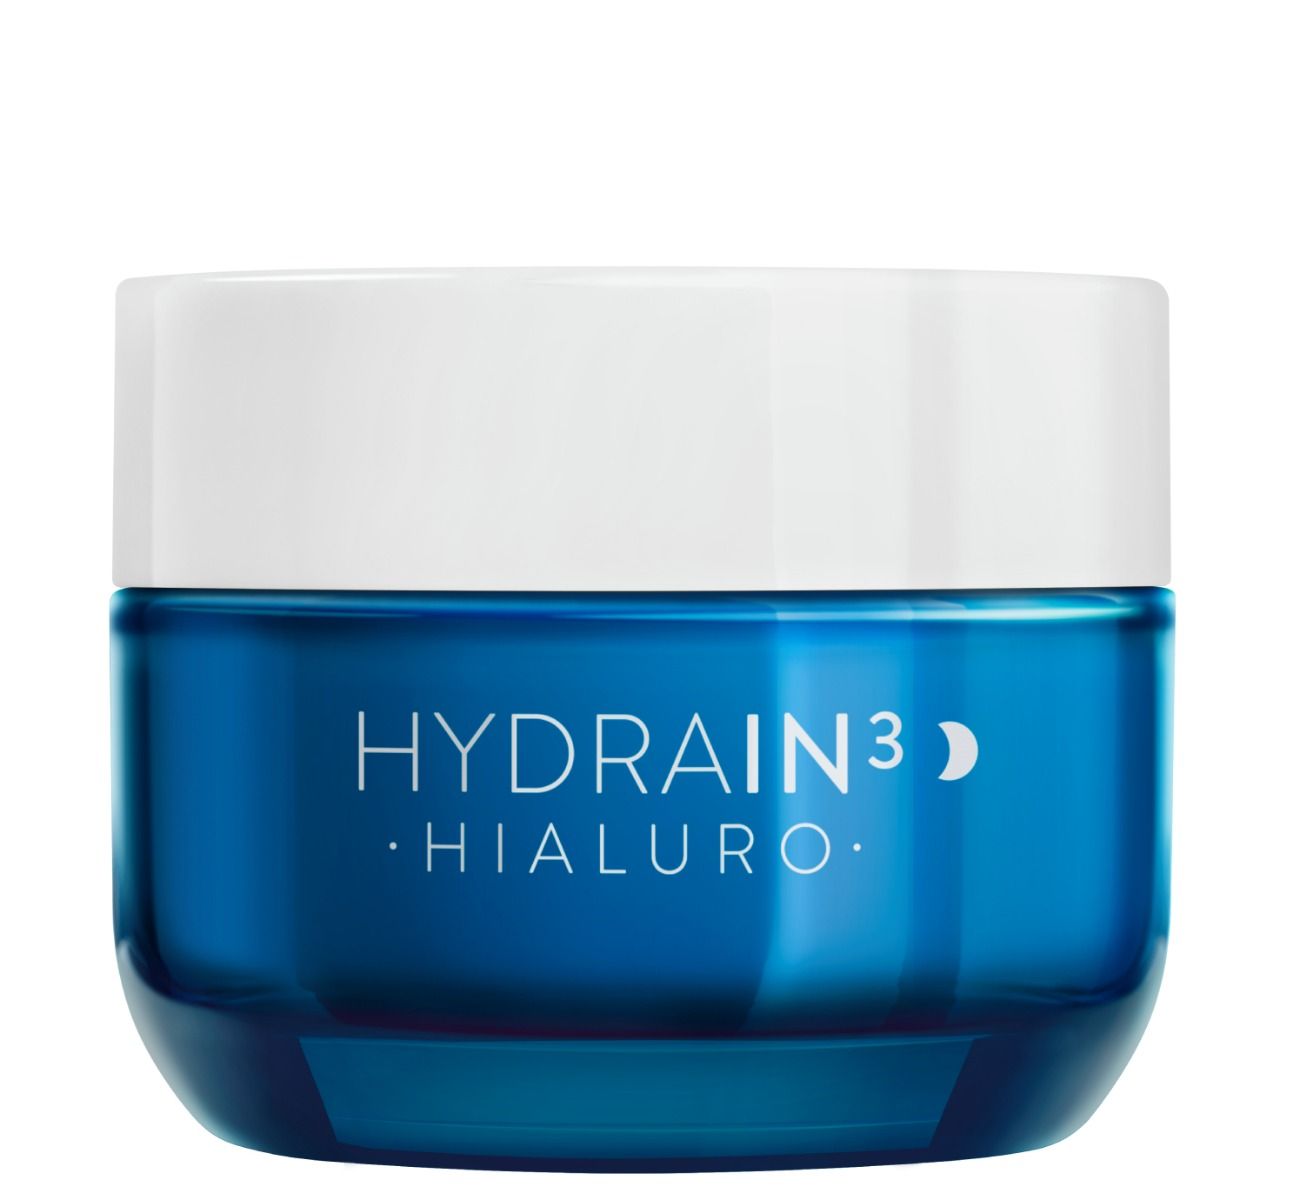 Dermedic Hydrain3 Hialuro крем для лица на ночь, 50 ml dermedic мицеллярная вода гидреин 3 гиалуро hialuro micellar water h20 500 мл dermedic hydrain3